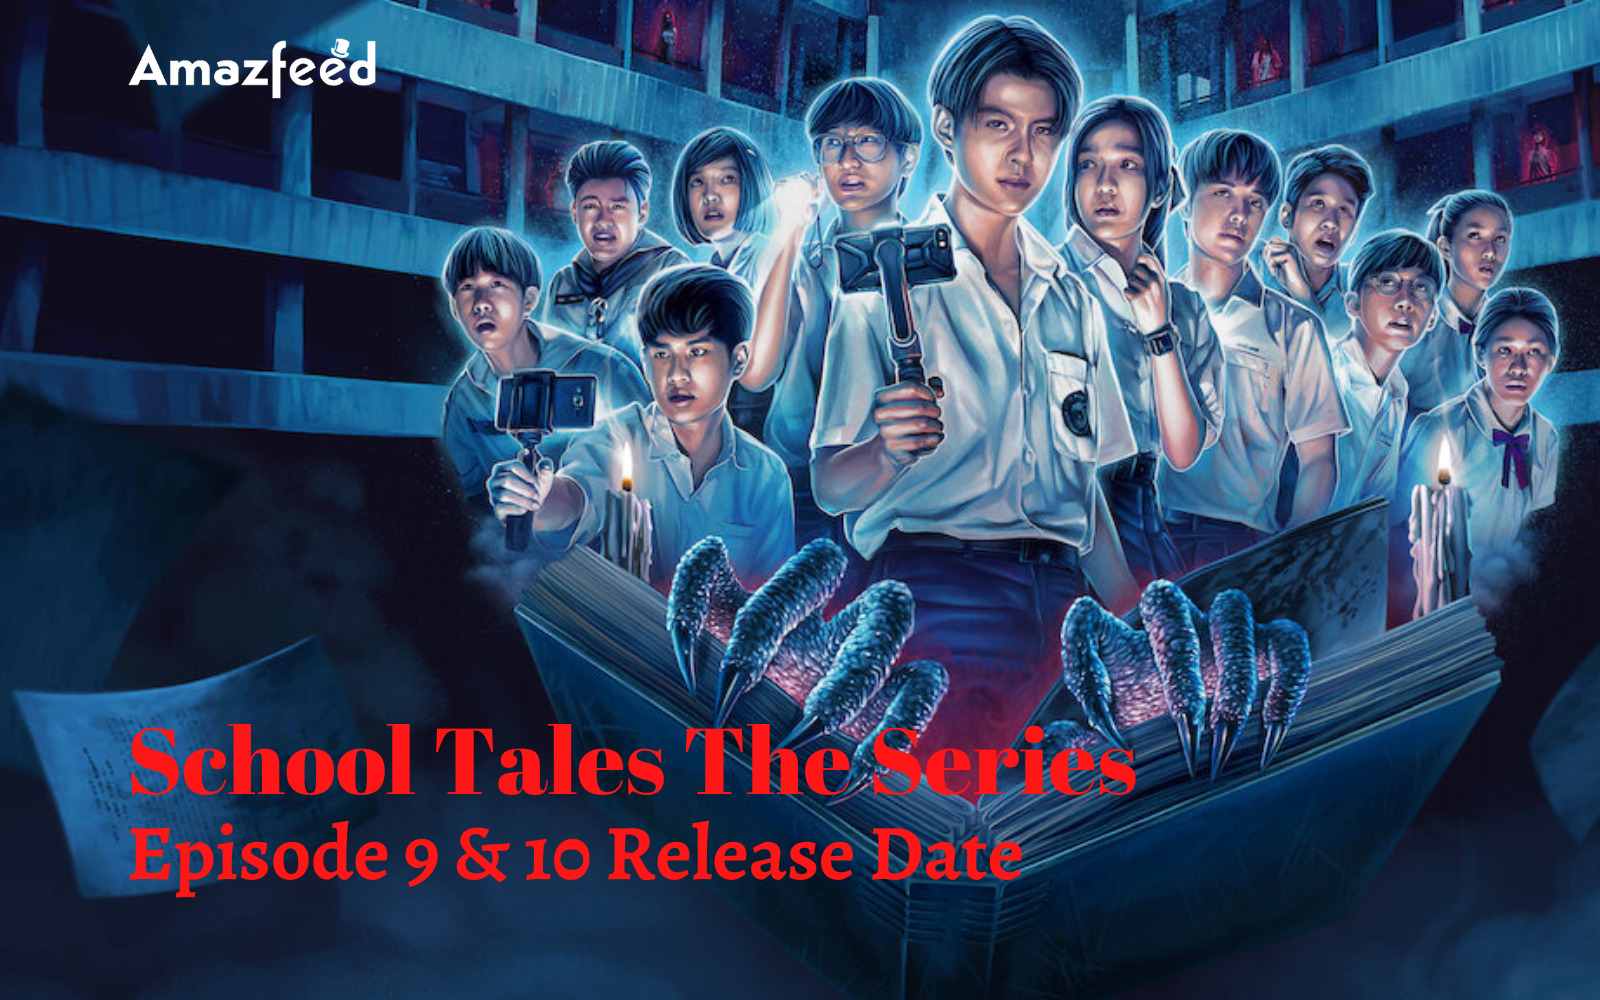 School Tales The Series Season 1 Episode 9 Release Date